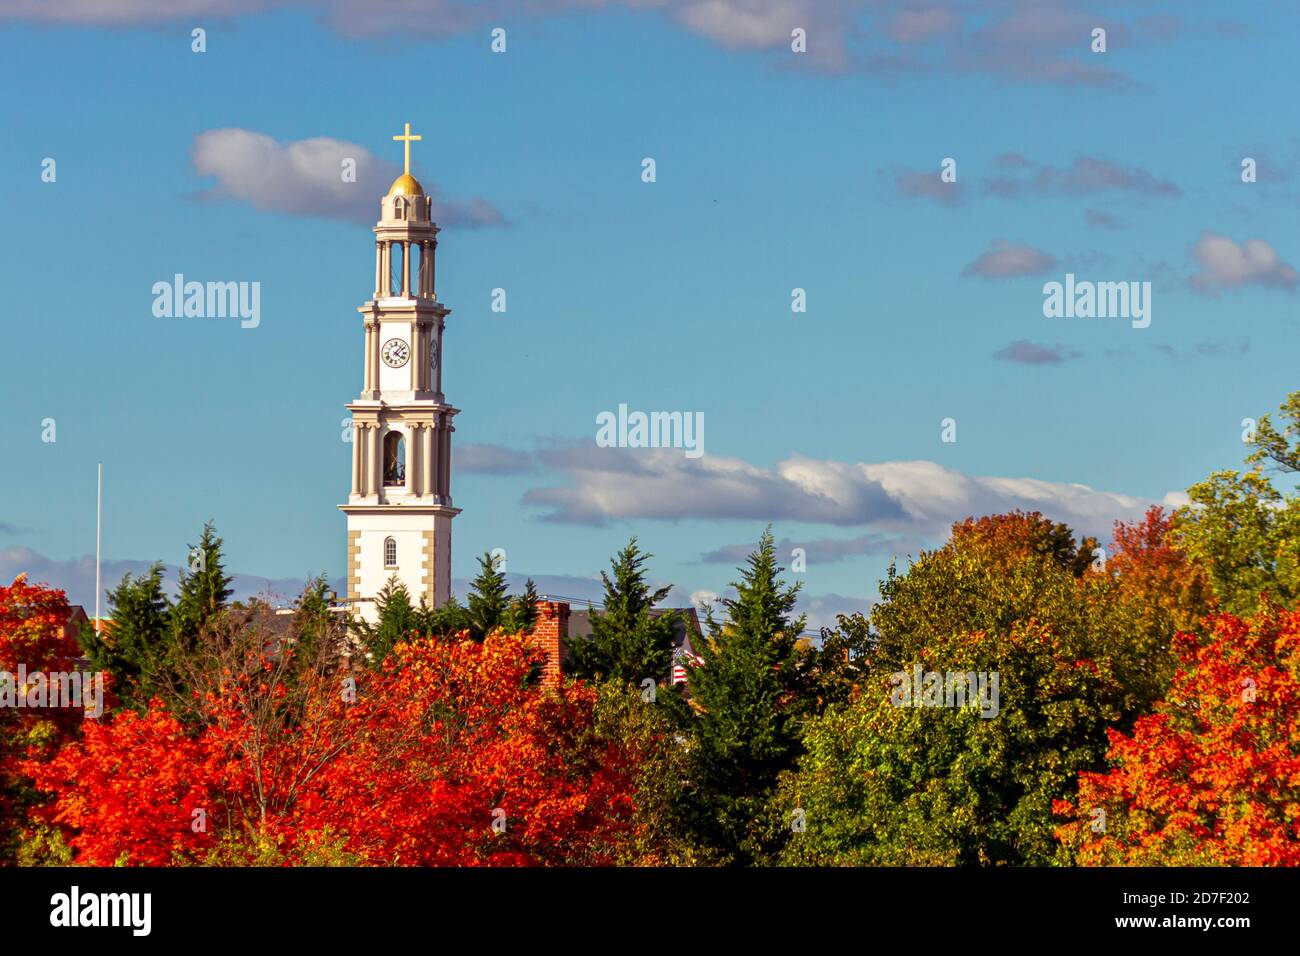 Eine malerische Aussicht auf Frederick an einem sonnigen Nachmittag im Herbst. Das höchste Gebäude in der Stadt (Glockenturm der St. John the Evangelist Catholic Church) Türme ein Stockfoto